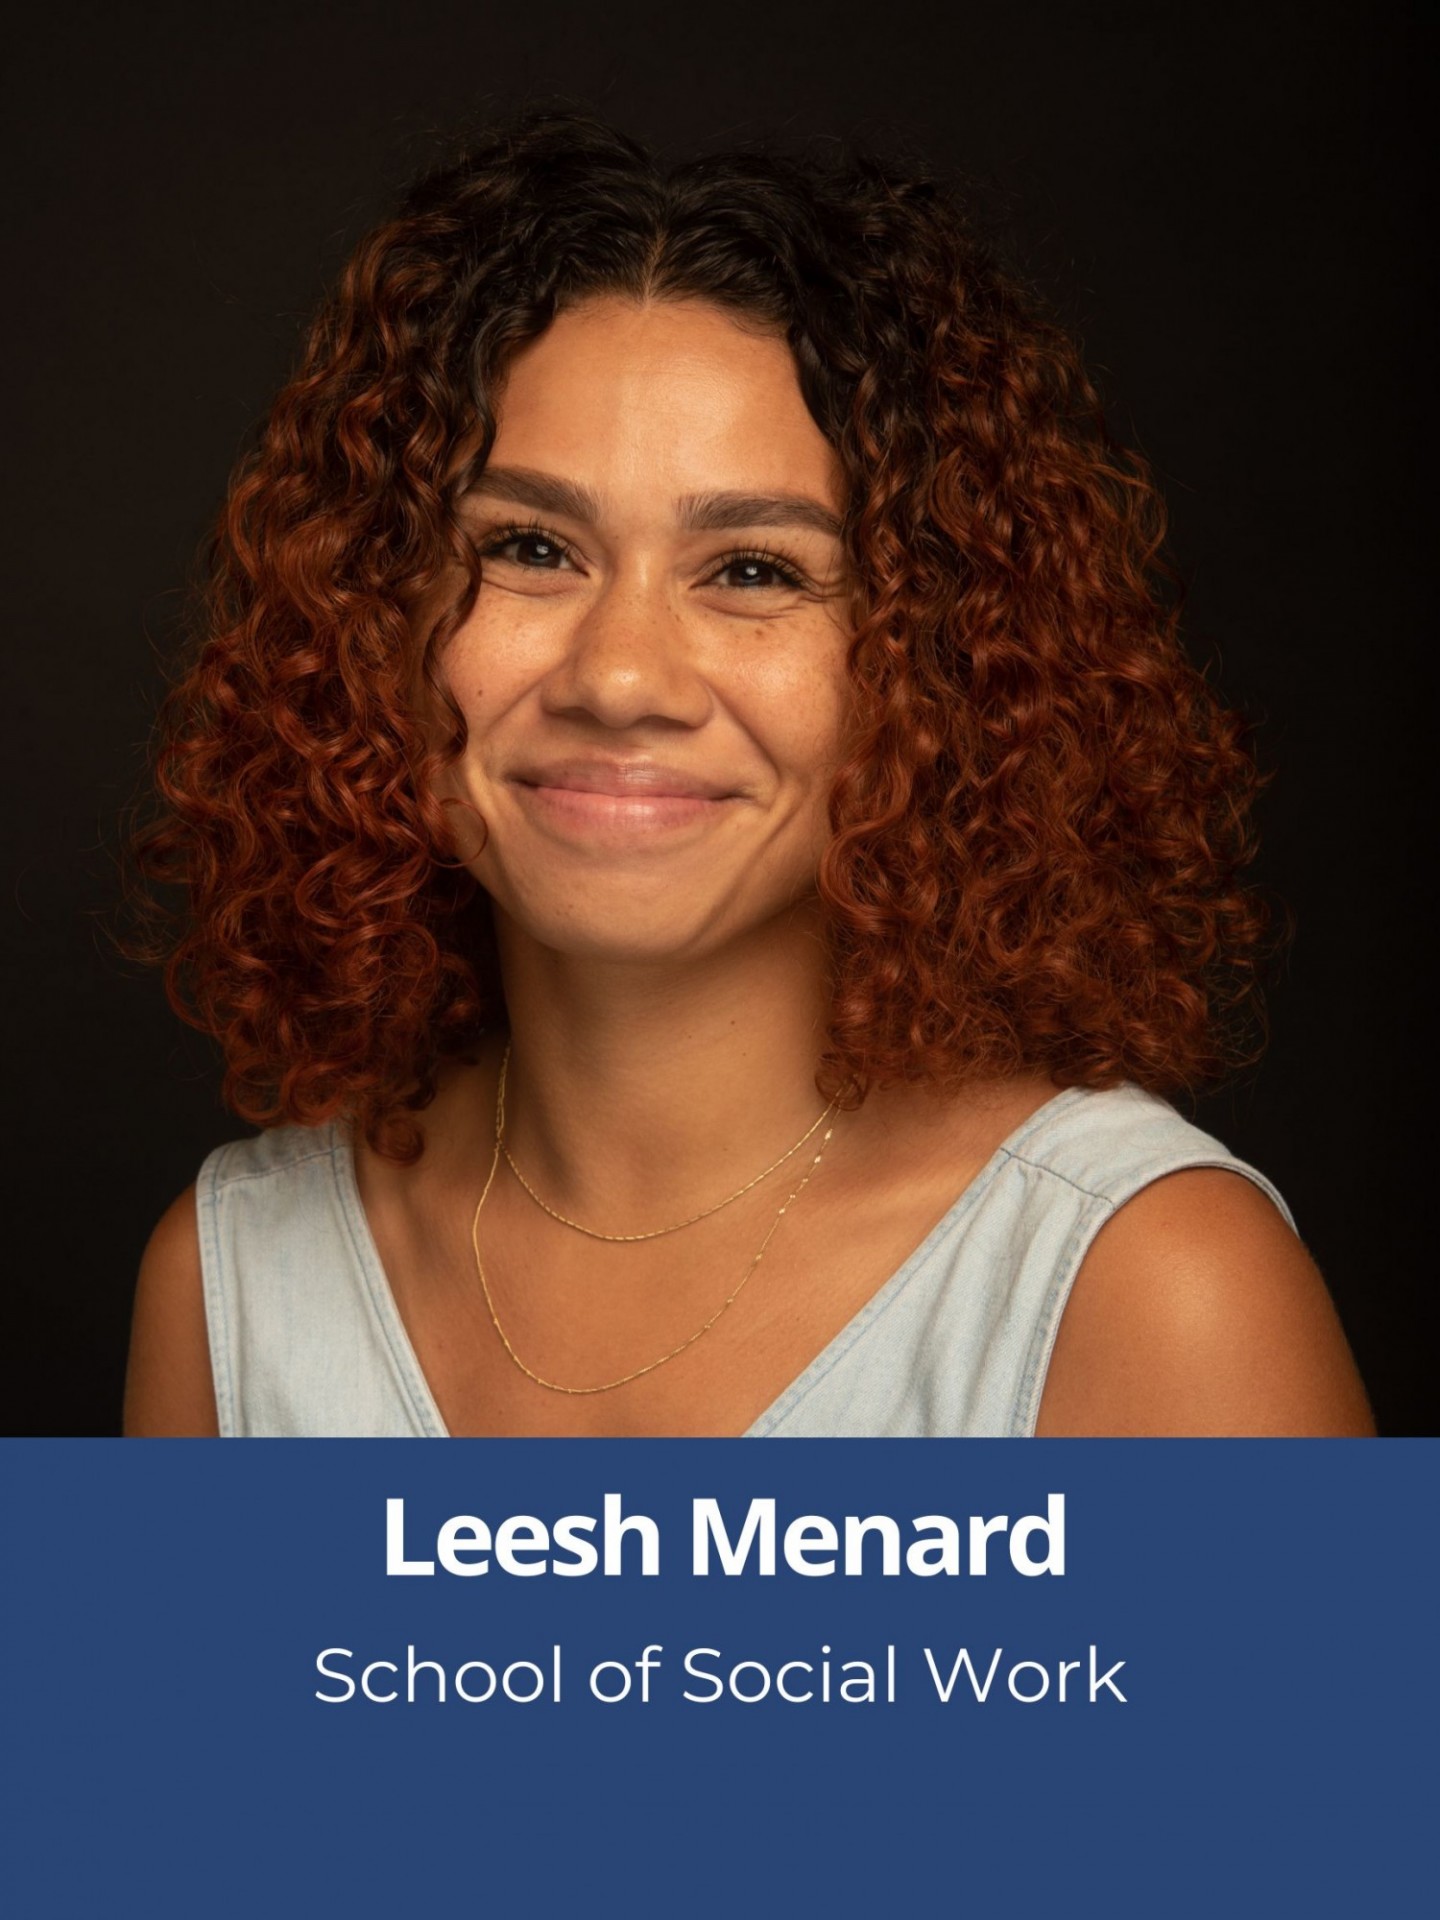 Headshot of Leesh Menard with their name underneath